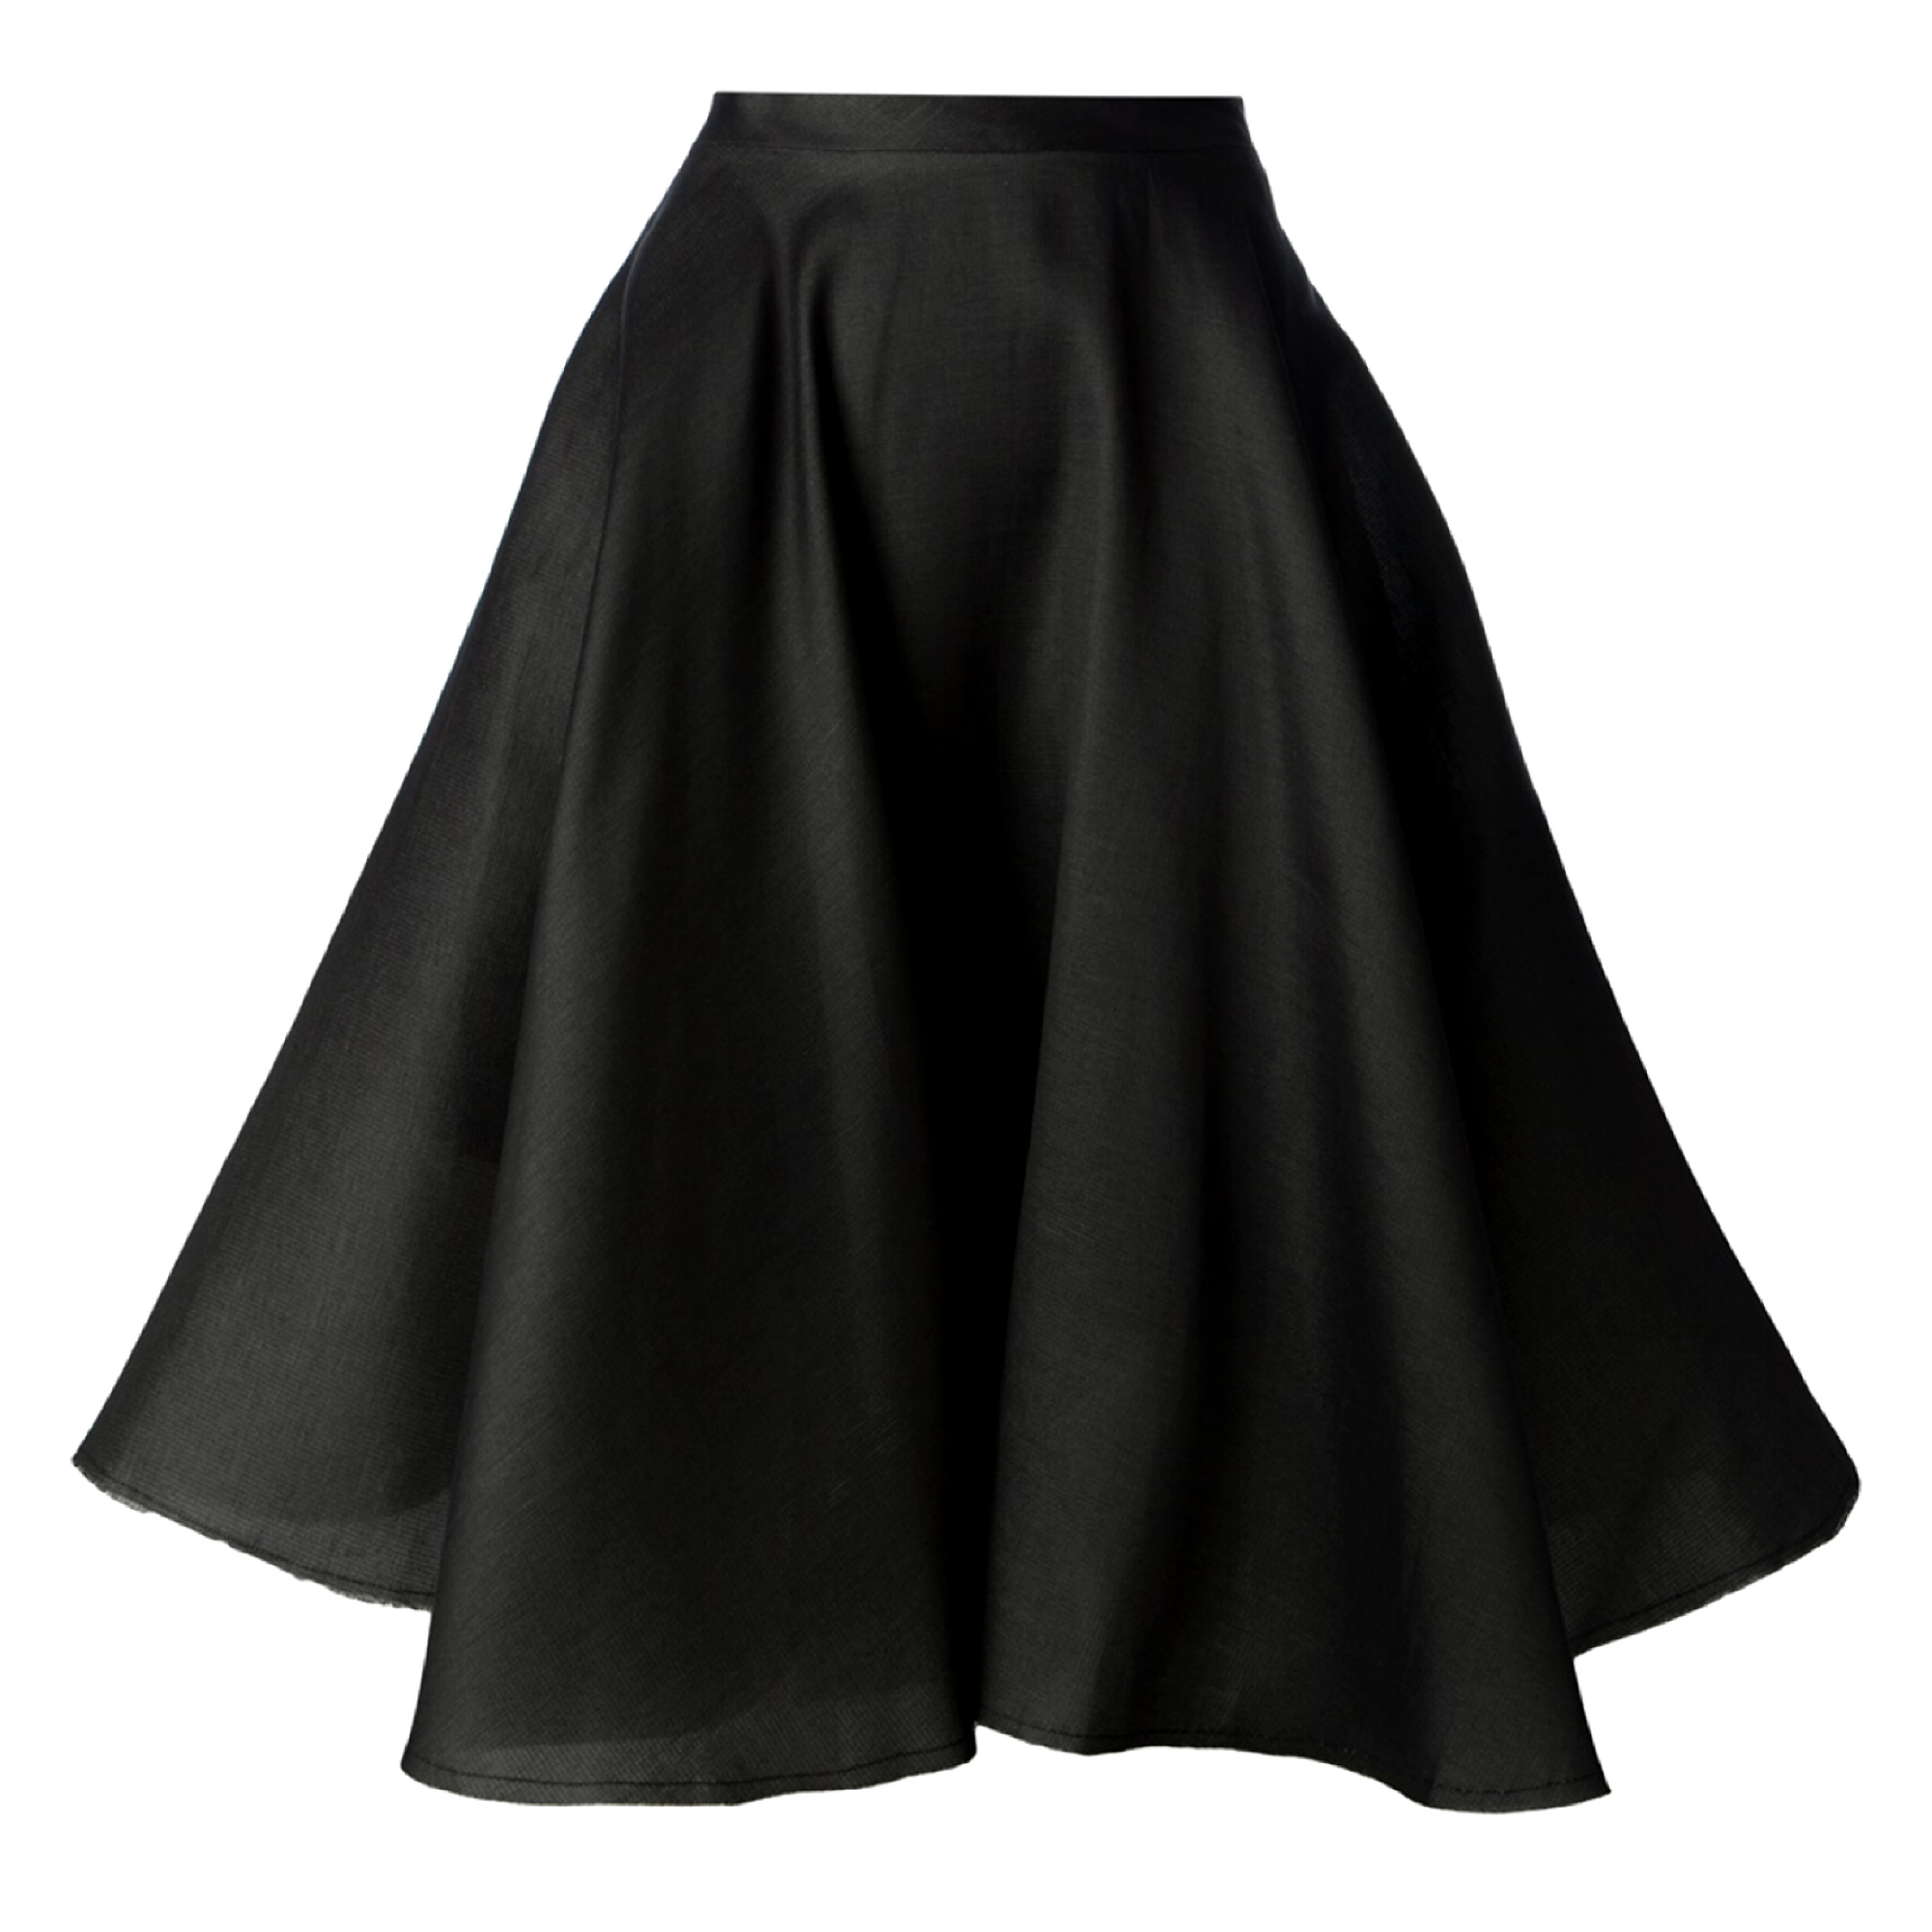 Gorgeous-Fashion-Black-Skirt-Trendy